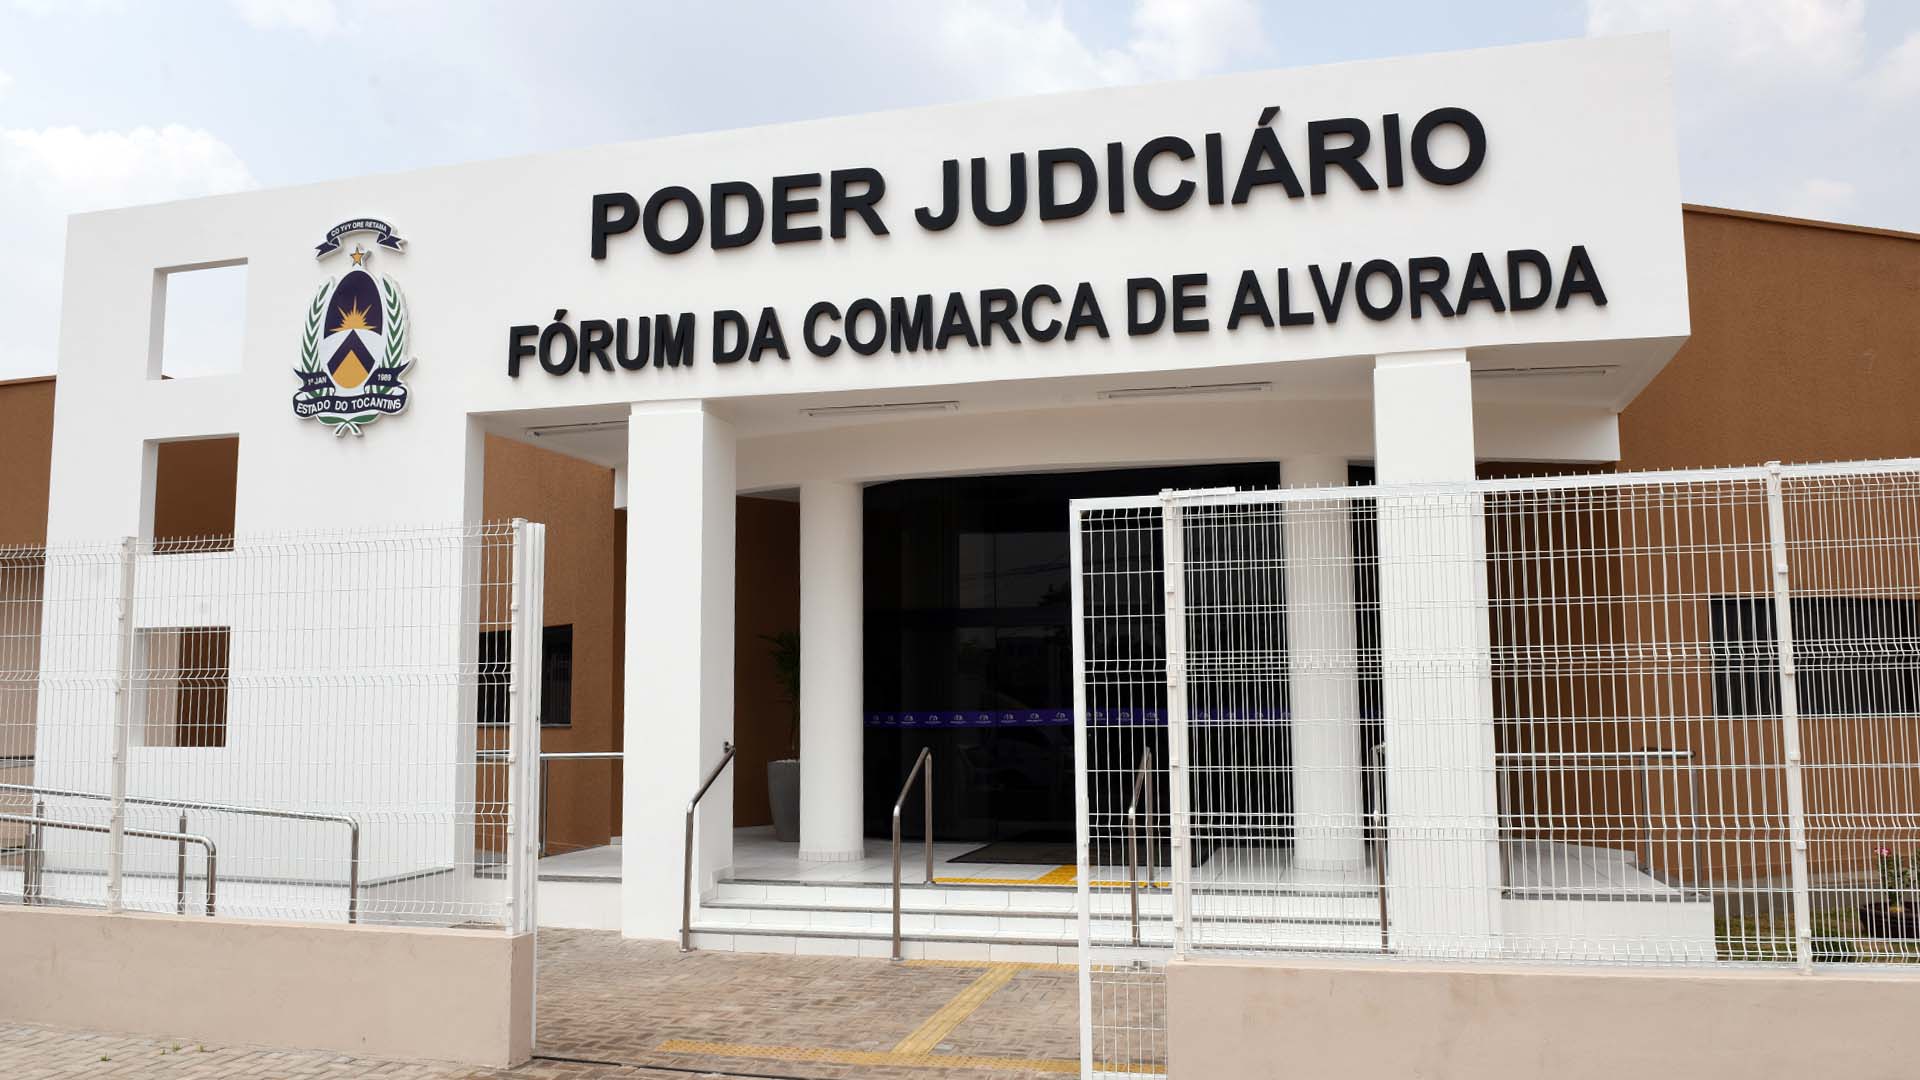 Imagem da fachada do prédio do fórum da comarca de Alvorada, prédio nas cores branca e marrom, com o nome 